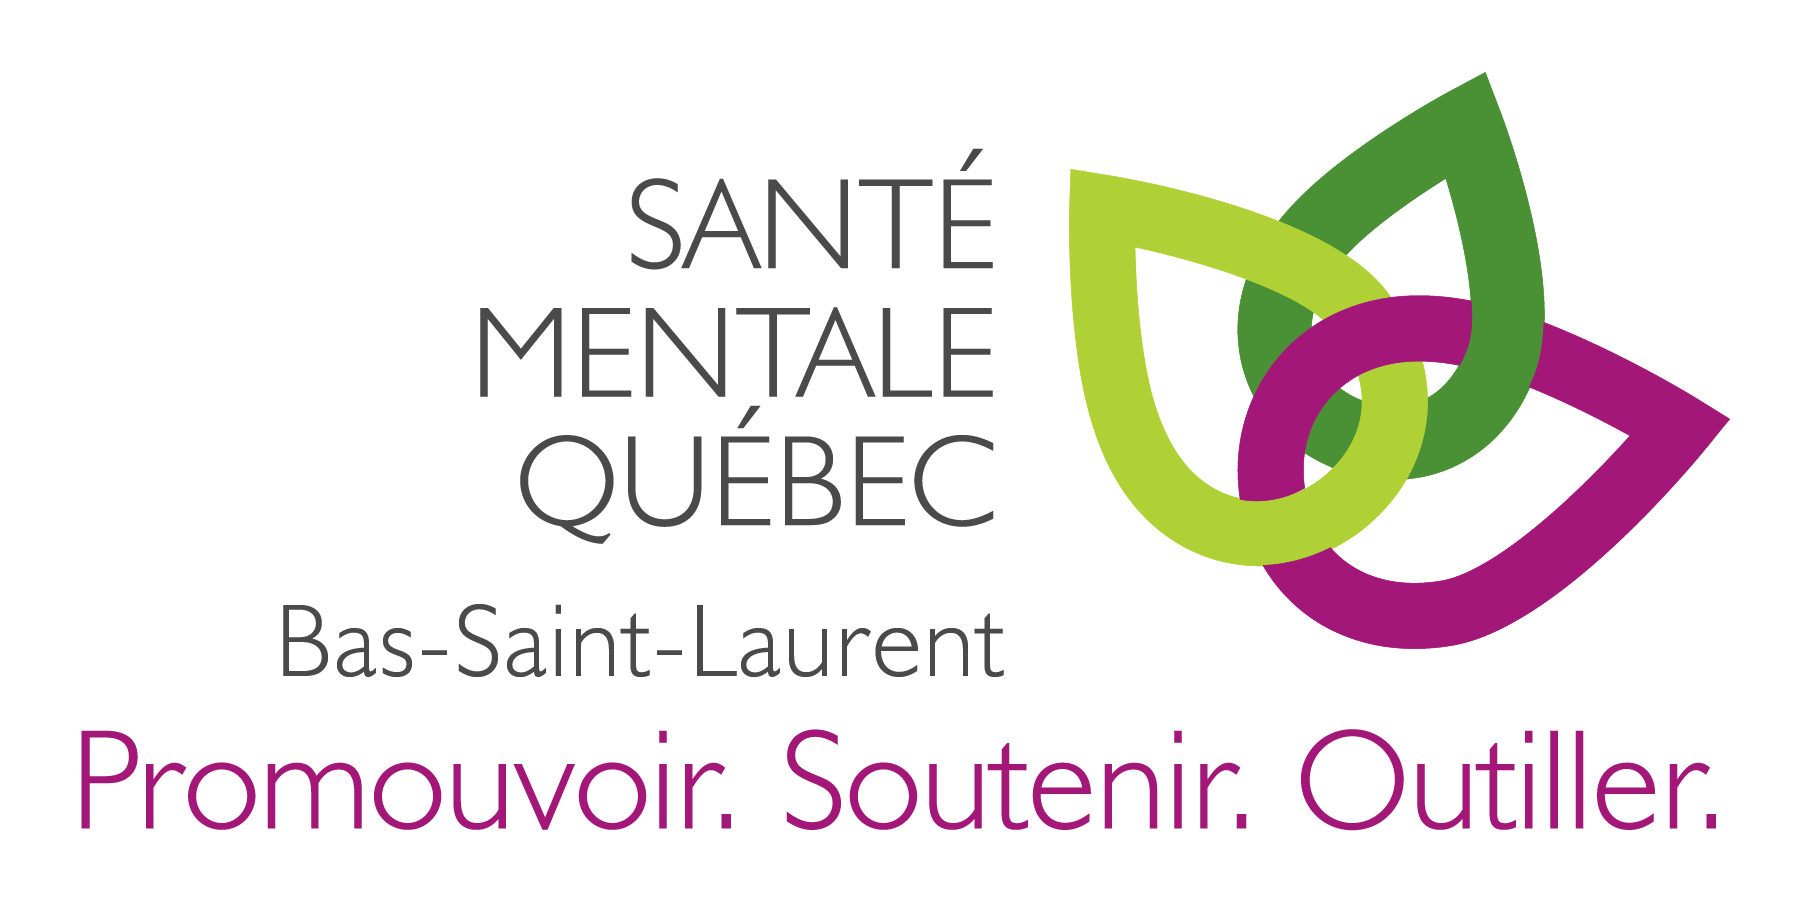 Santé mentale Québec – Bas-Saint-Laurent